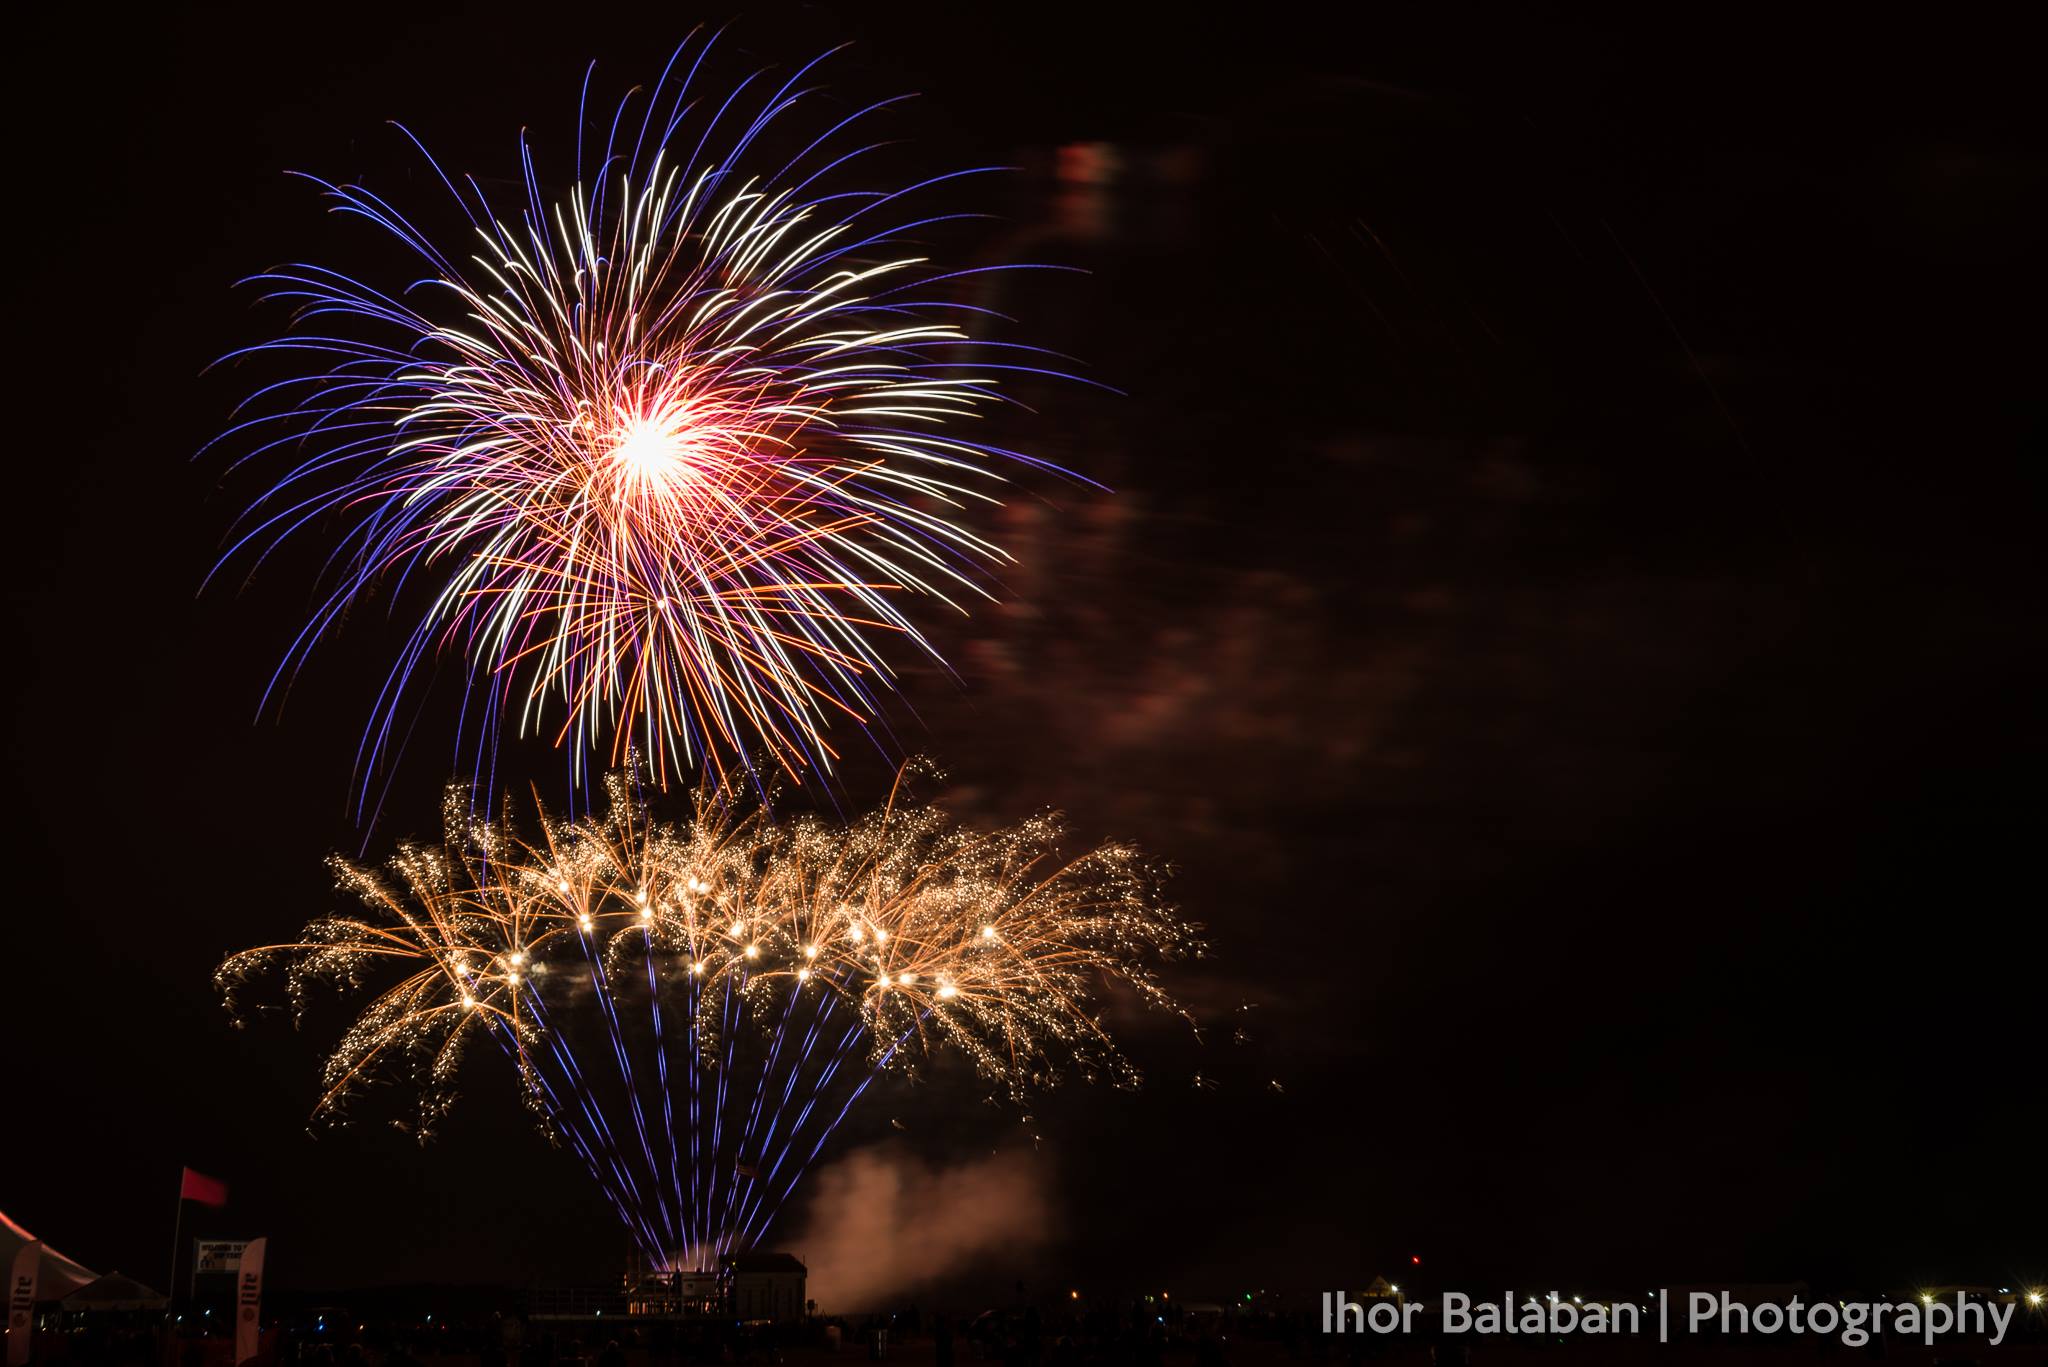 Fireworks Galore: Saturday July 2 & Monday July 4